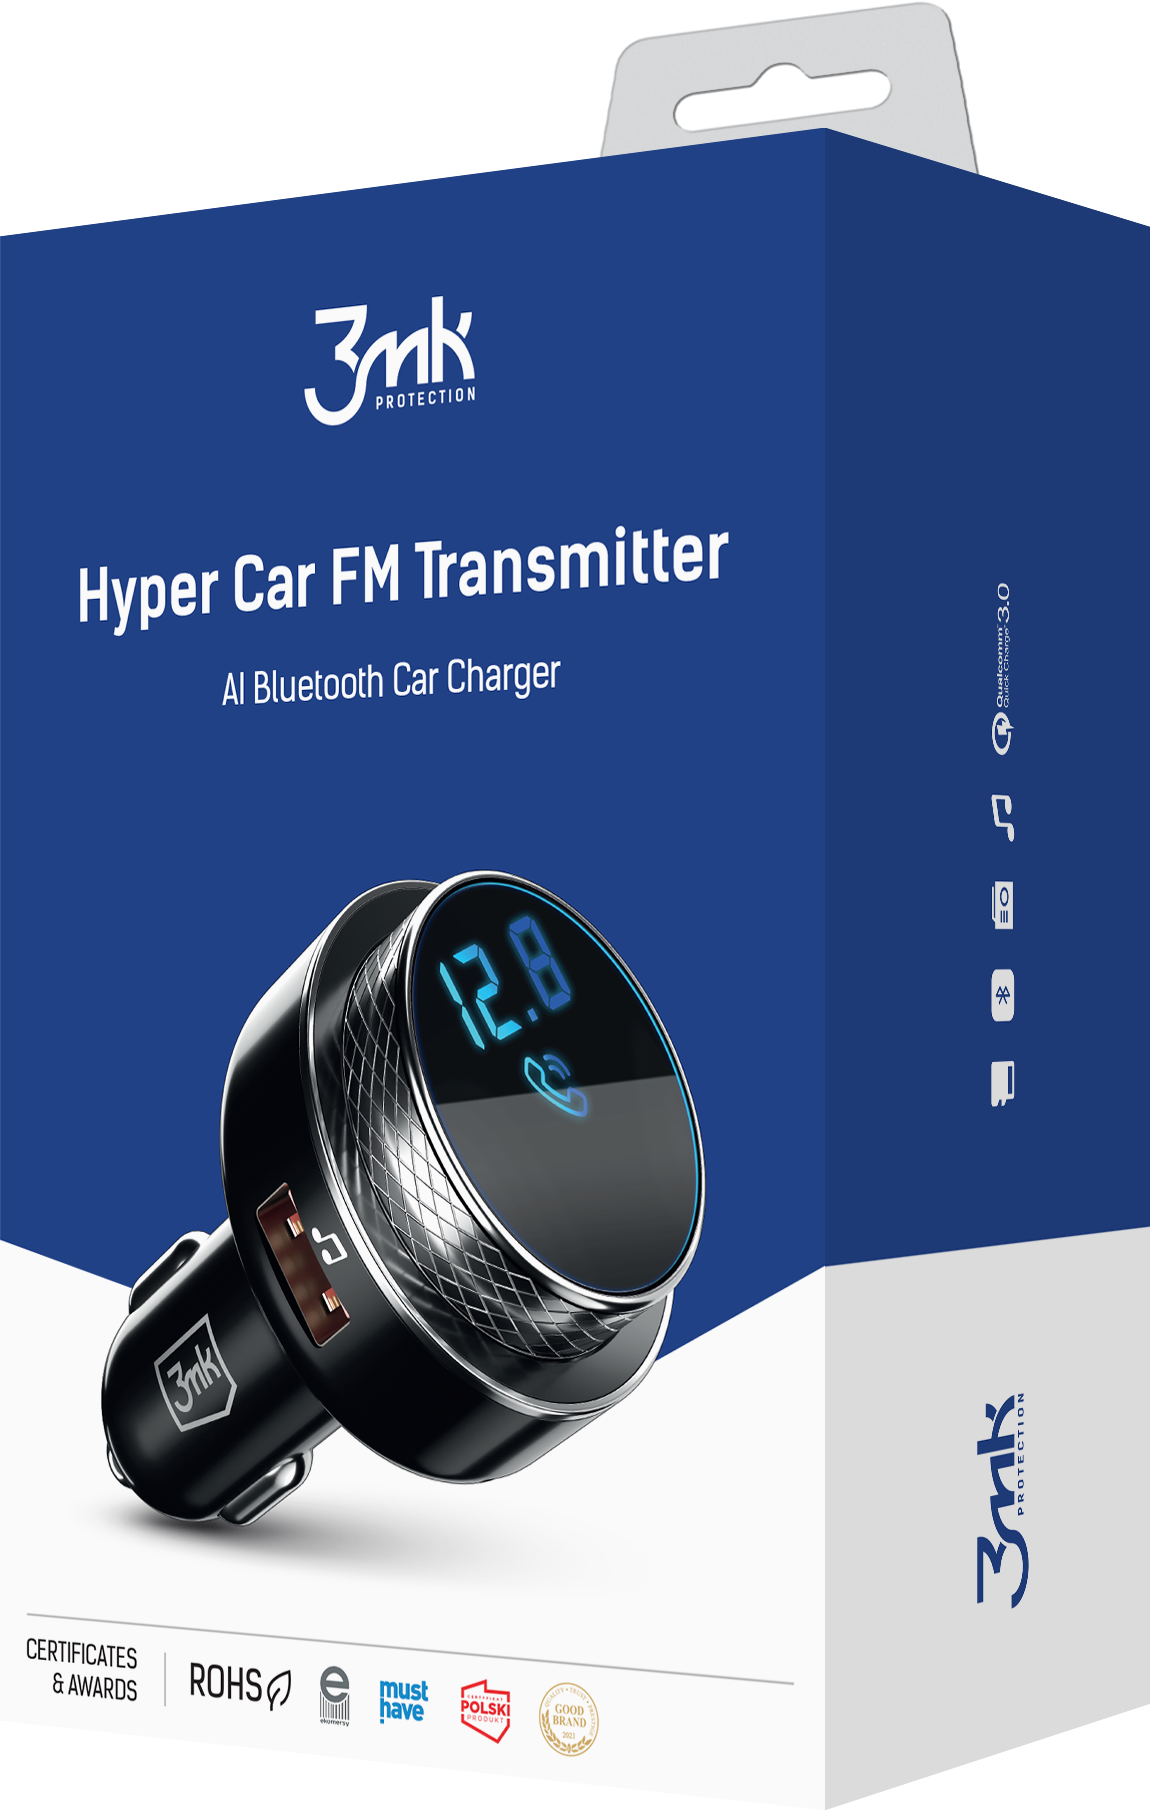 3mk-packshot-hyper-car-fm-transmitter-1